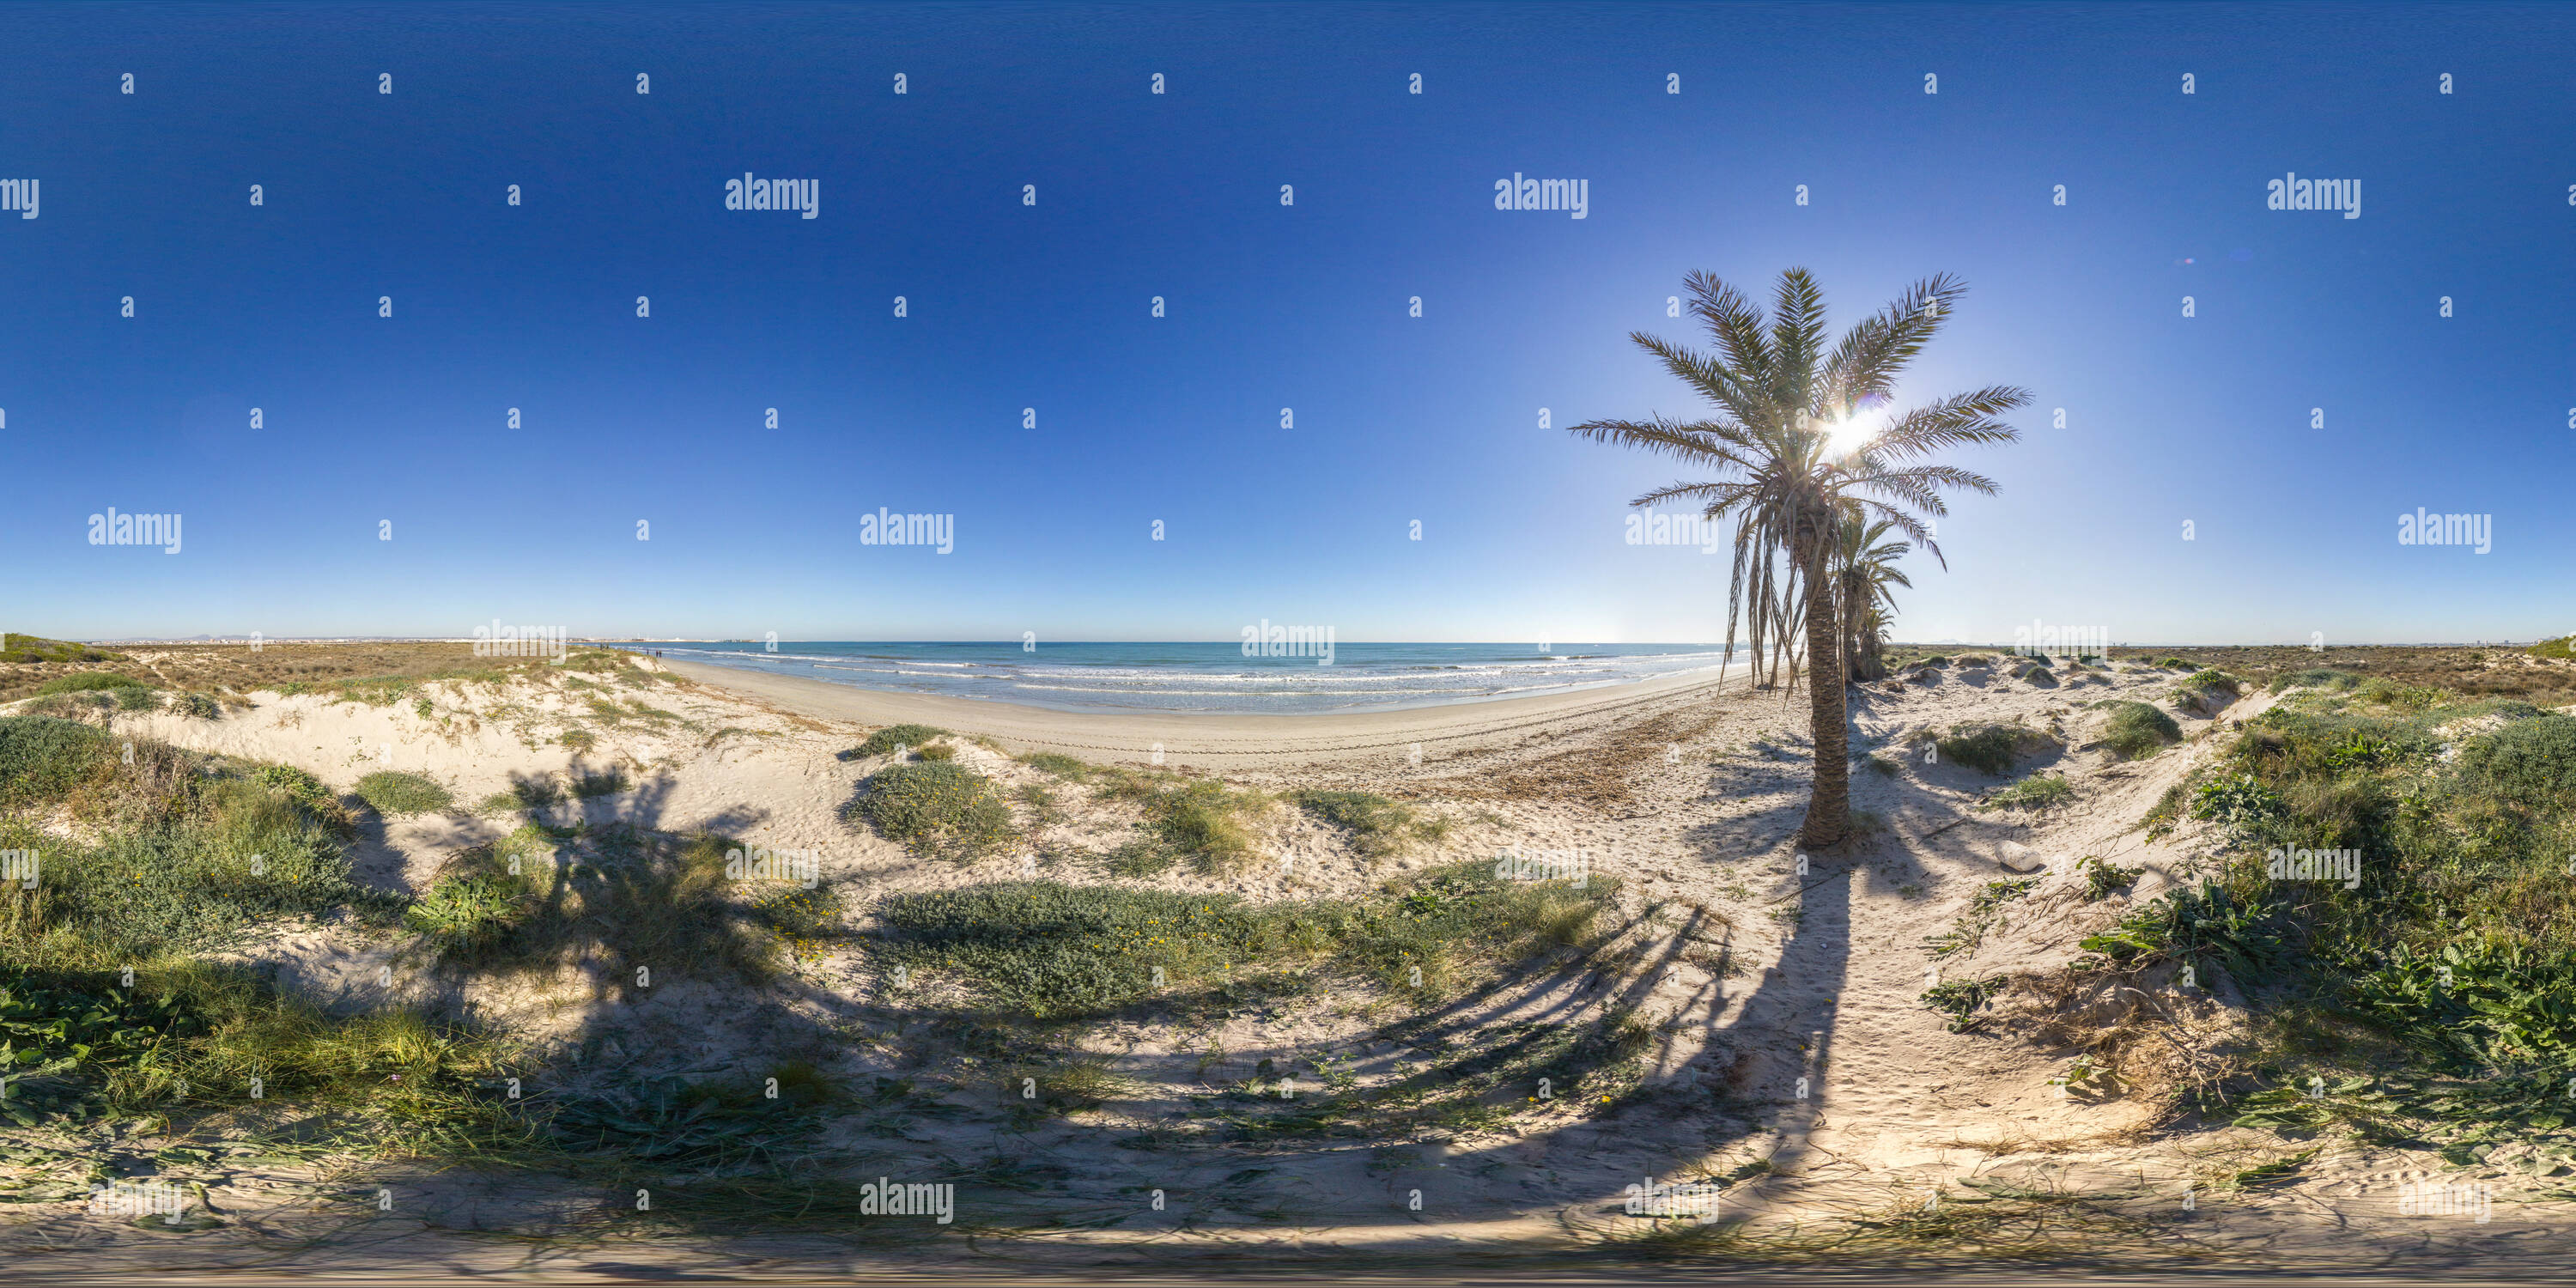 360 degree panoramic view of Playa De La Llana